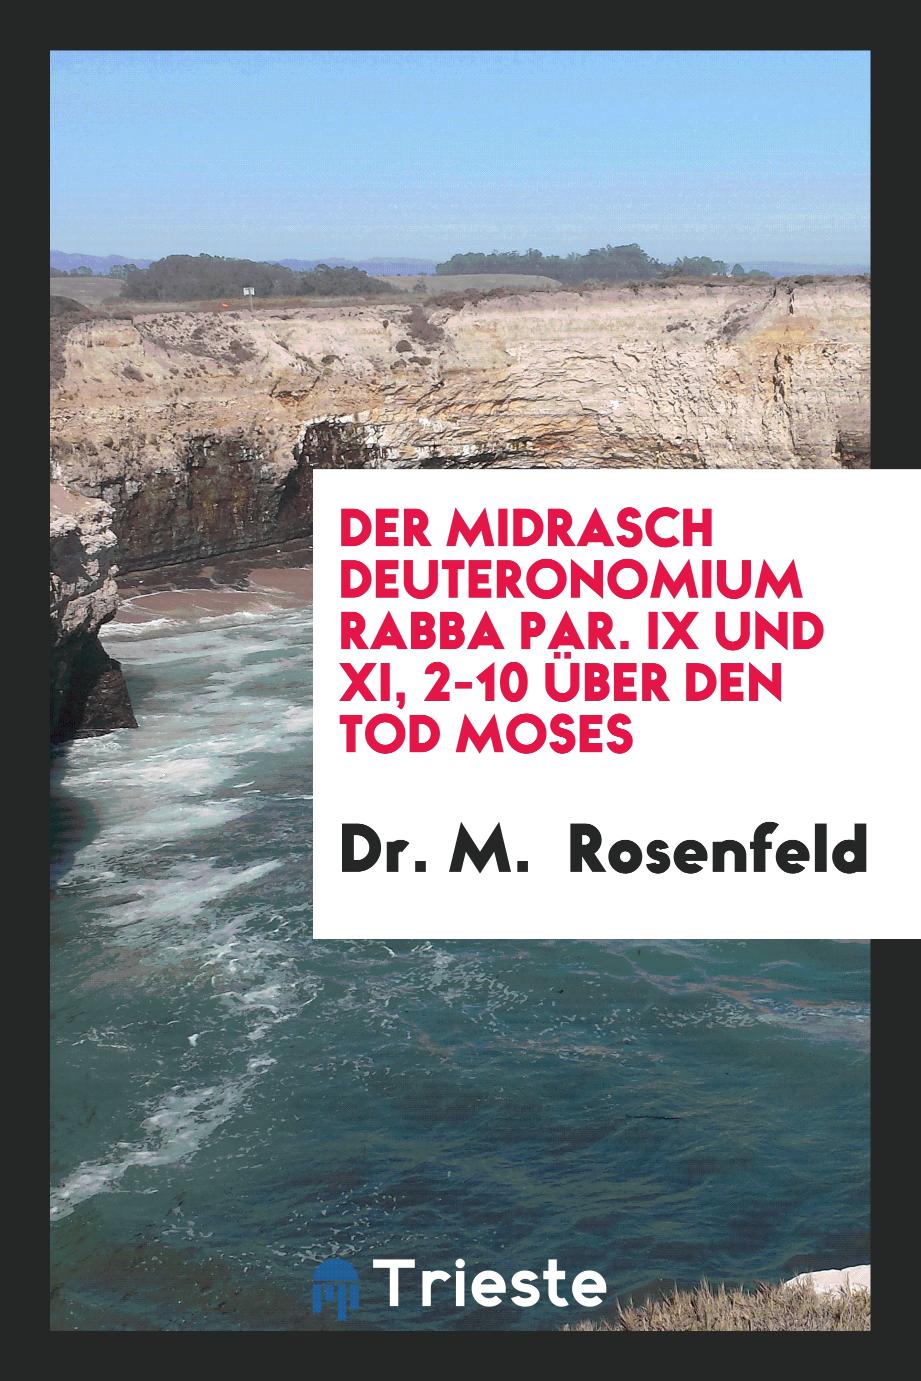 Dr. M.  Rosenfeld - Der Midrasch Deuteronomium Rabba Par. IX und XI, 2-10 über den Tod Moses